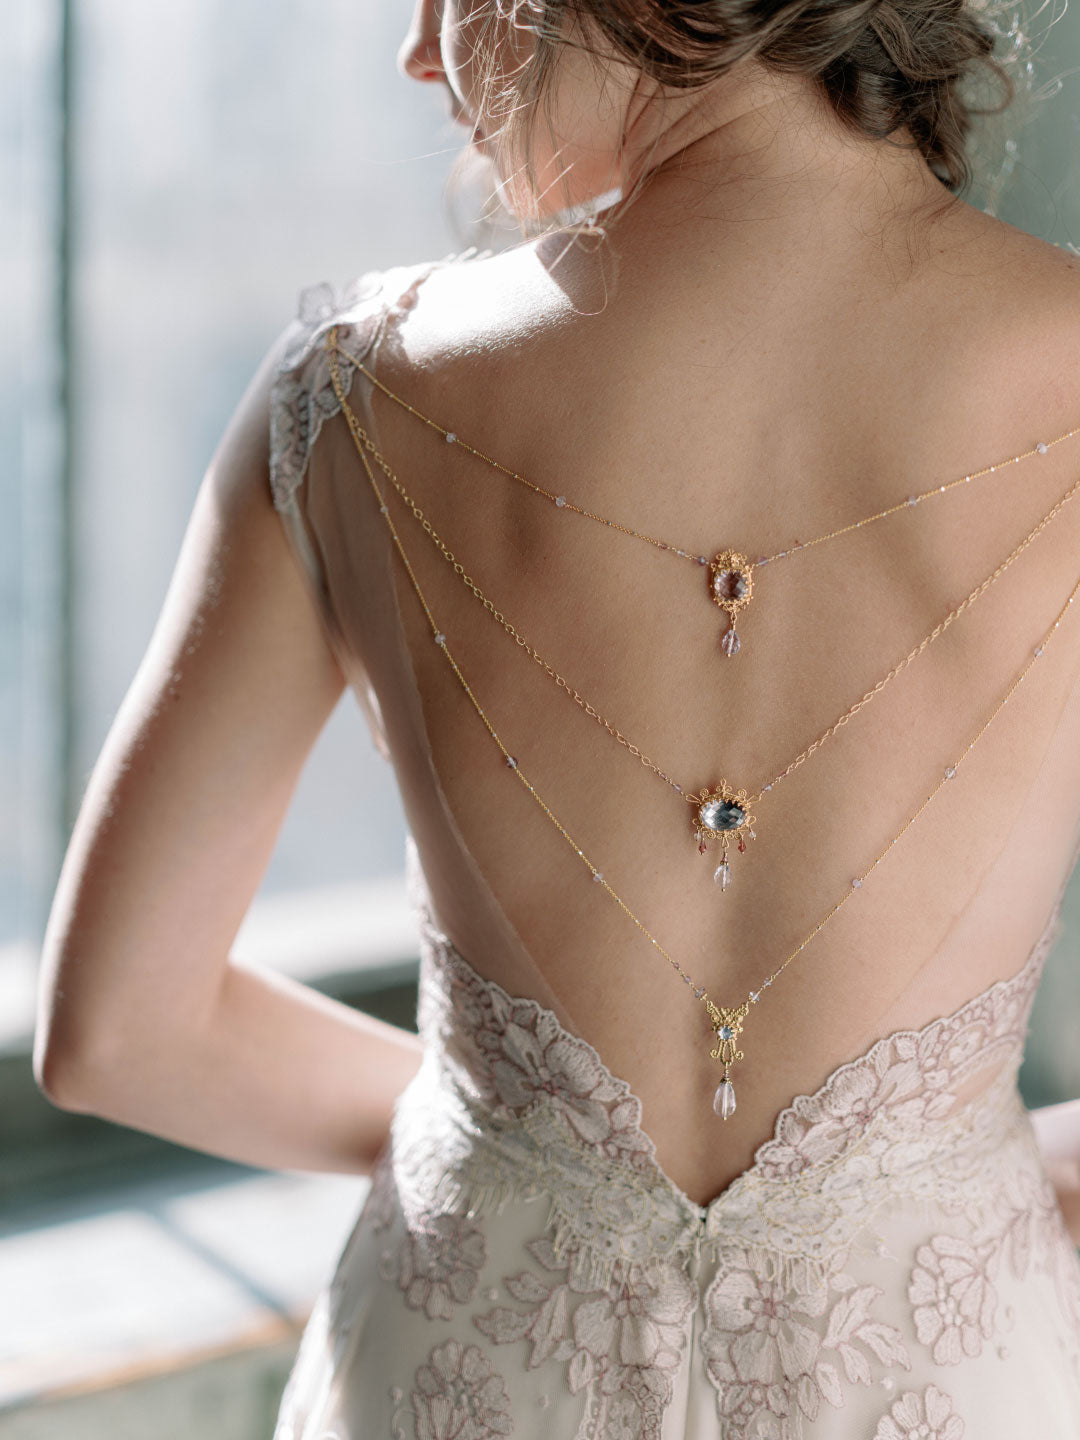 Adorned Neckless Wedding Jewelry with Amythest Wedding Dress